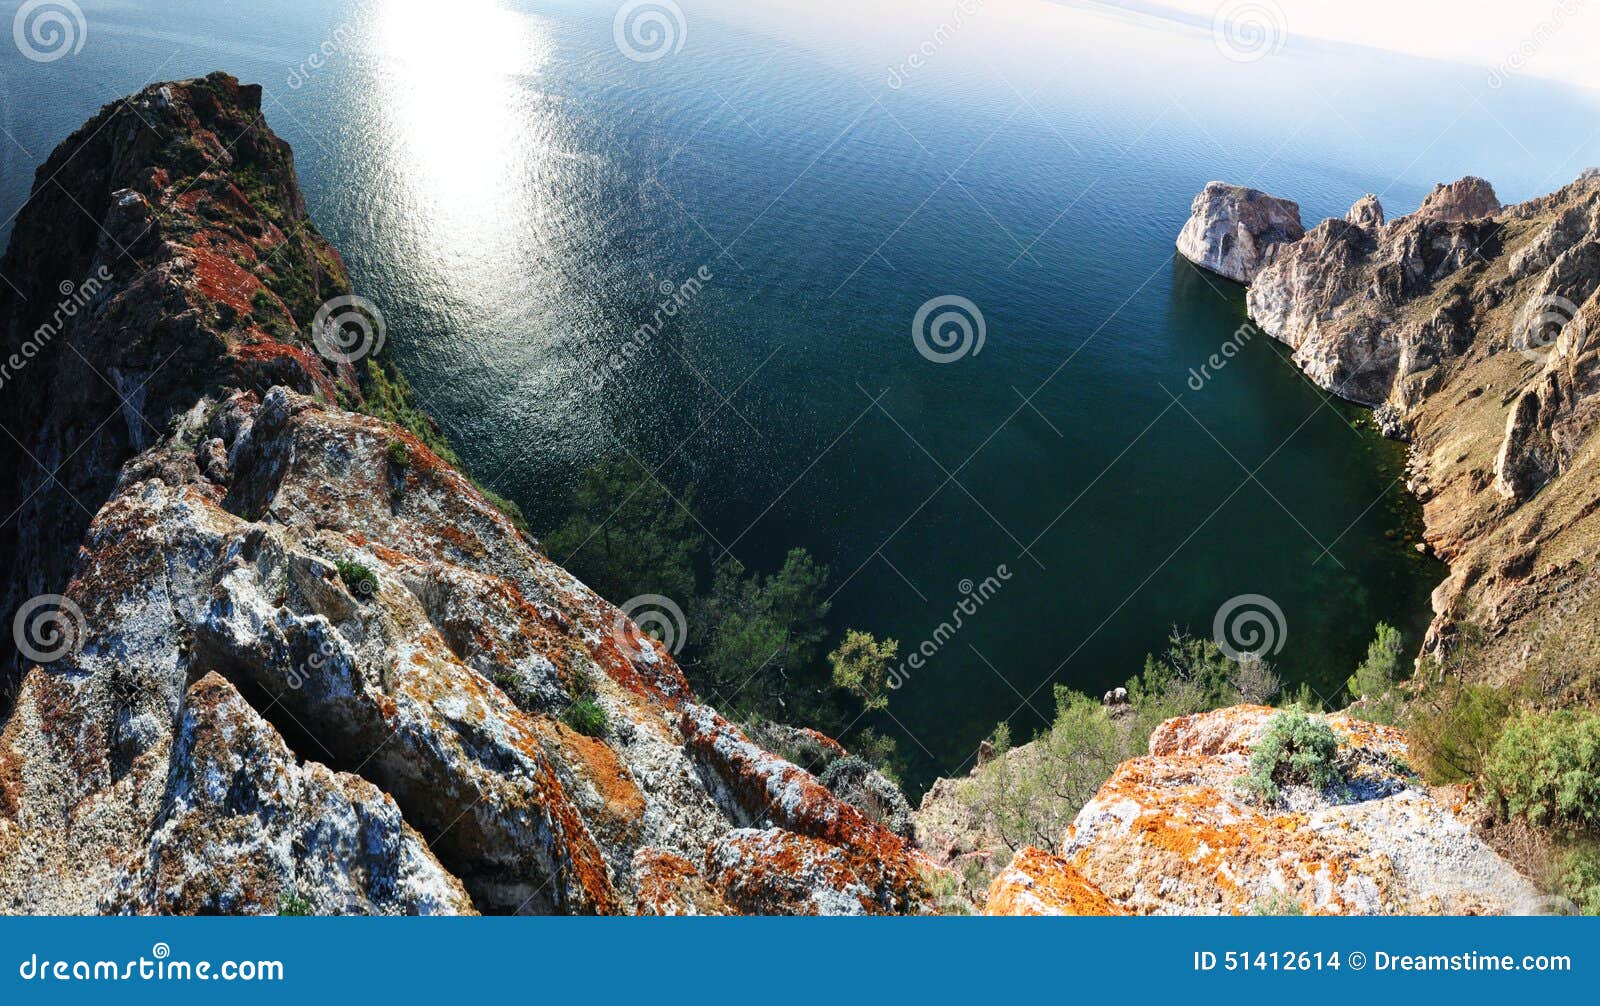 Lagune von Baykal See. Panoramablick vom Rand am See